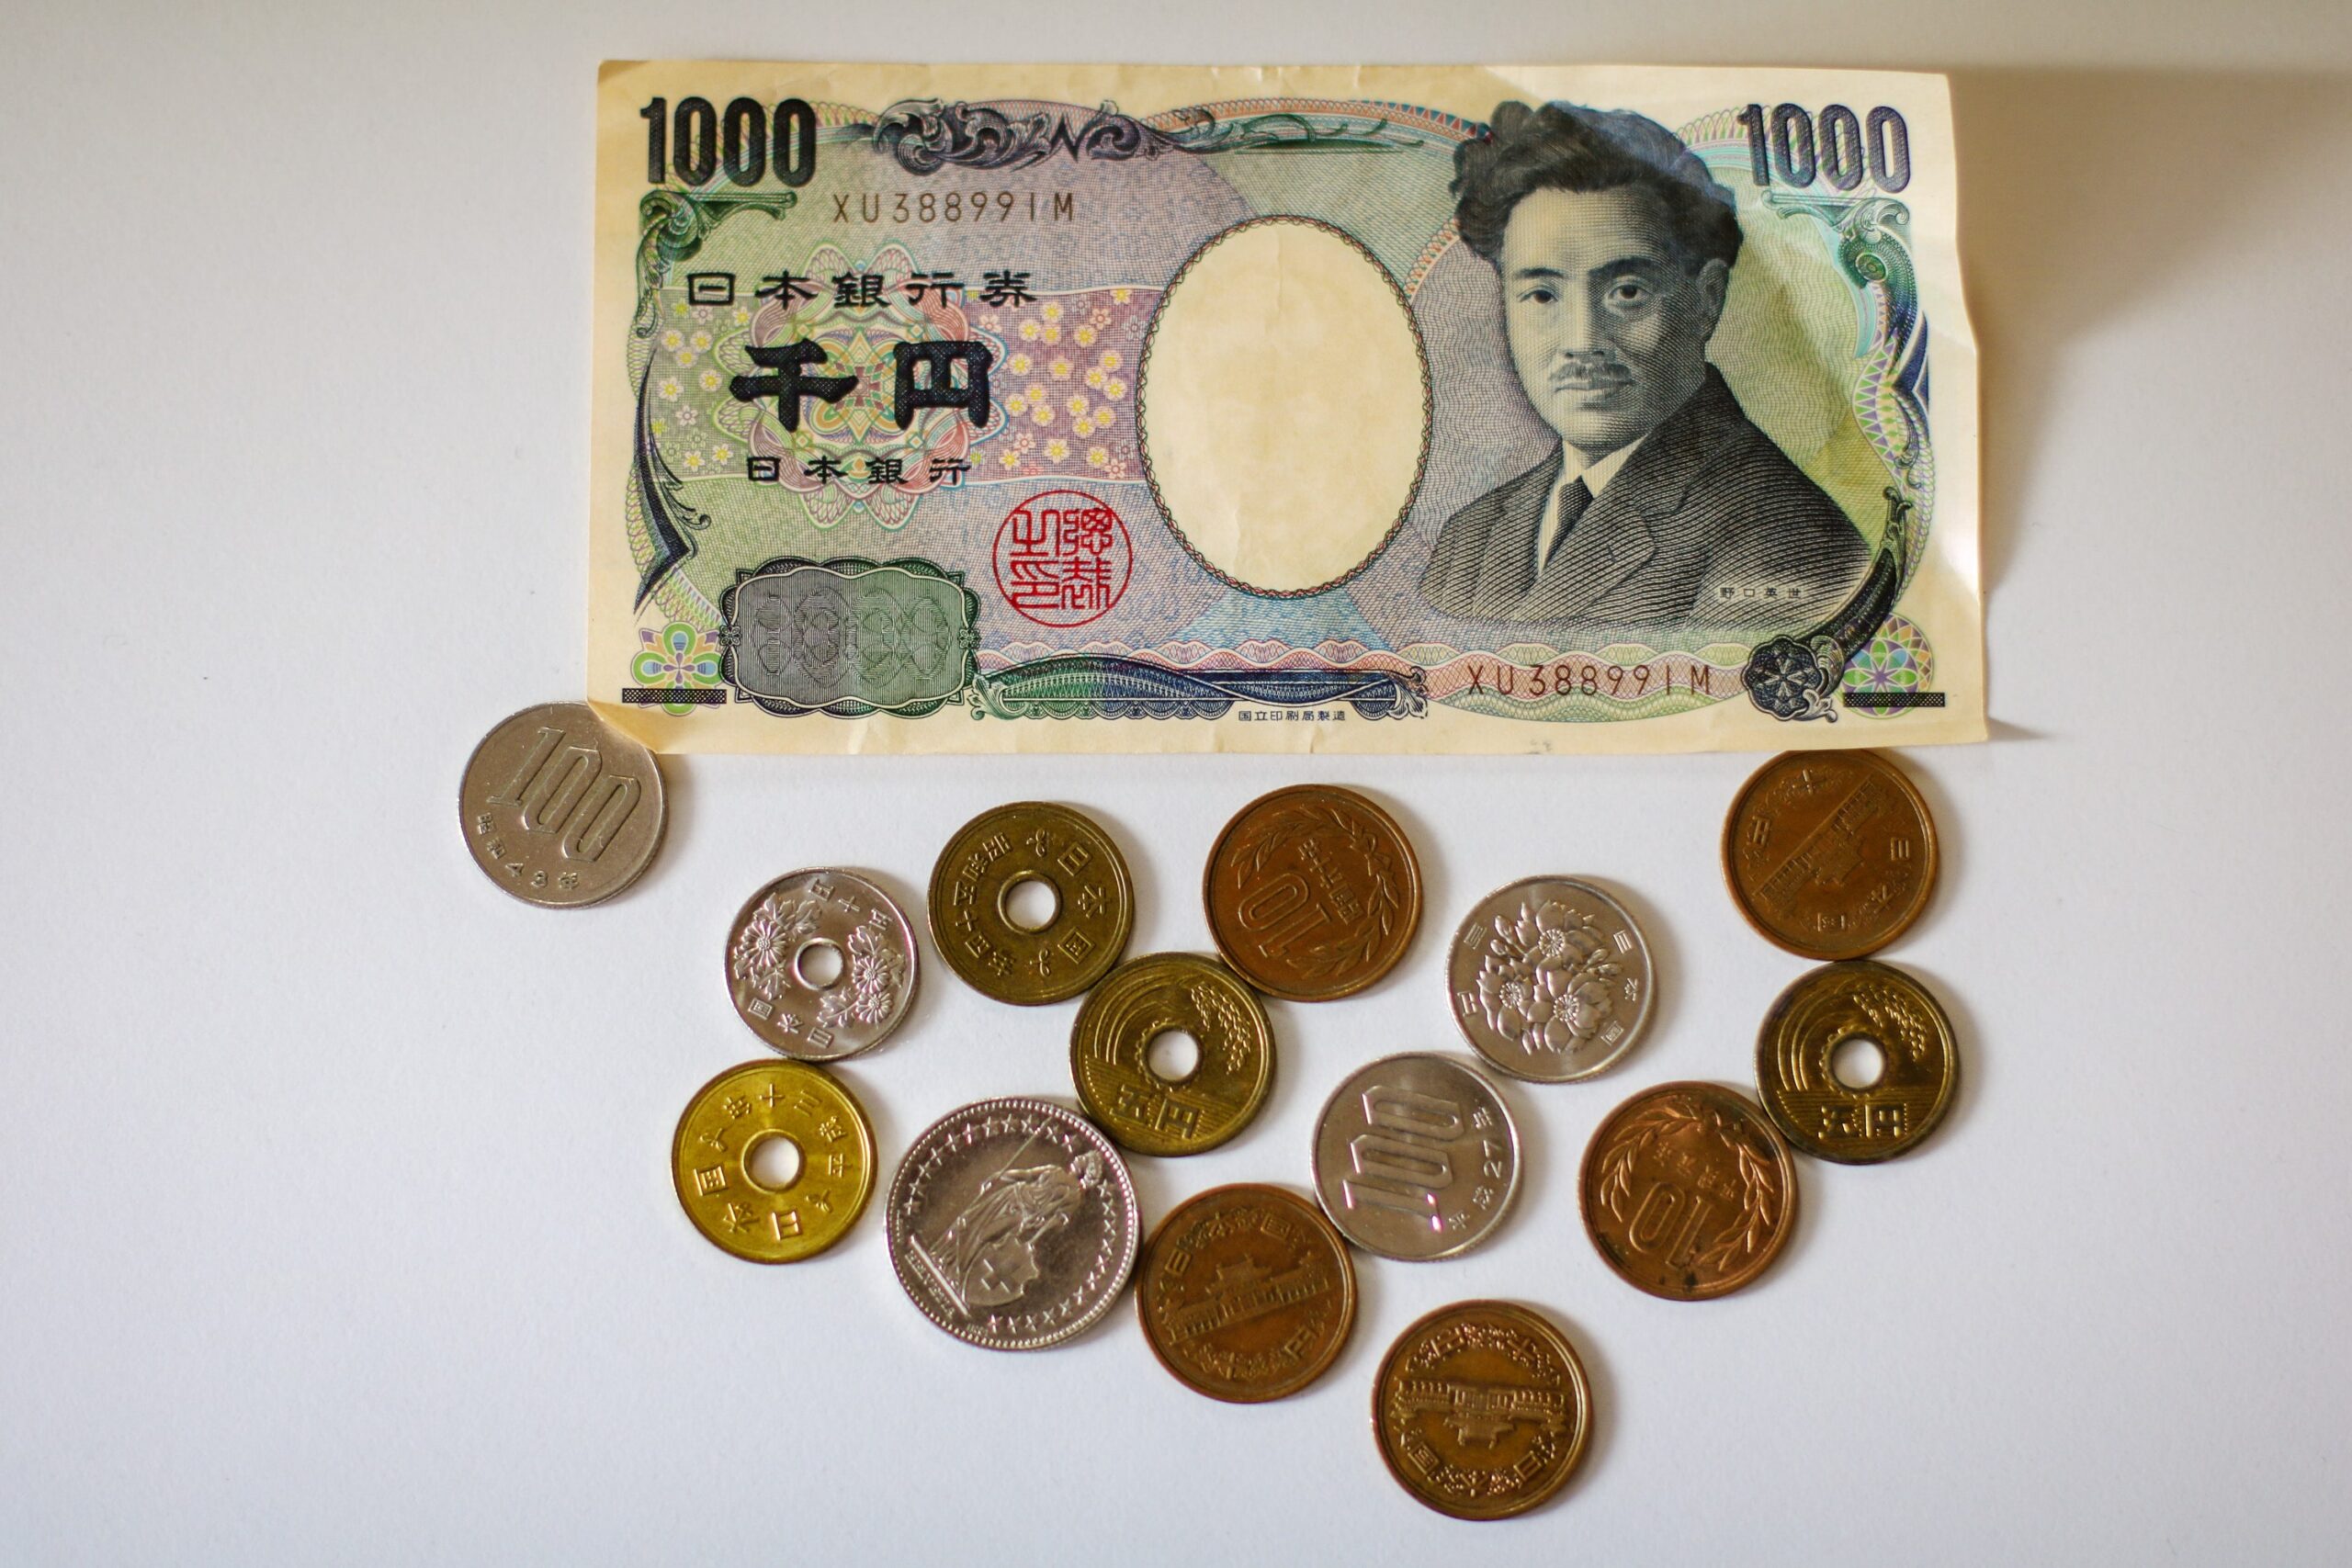 Geldscheine zum Bezahlen in Japan